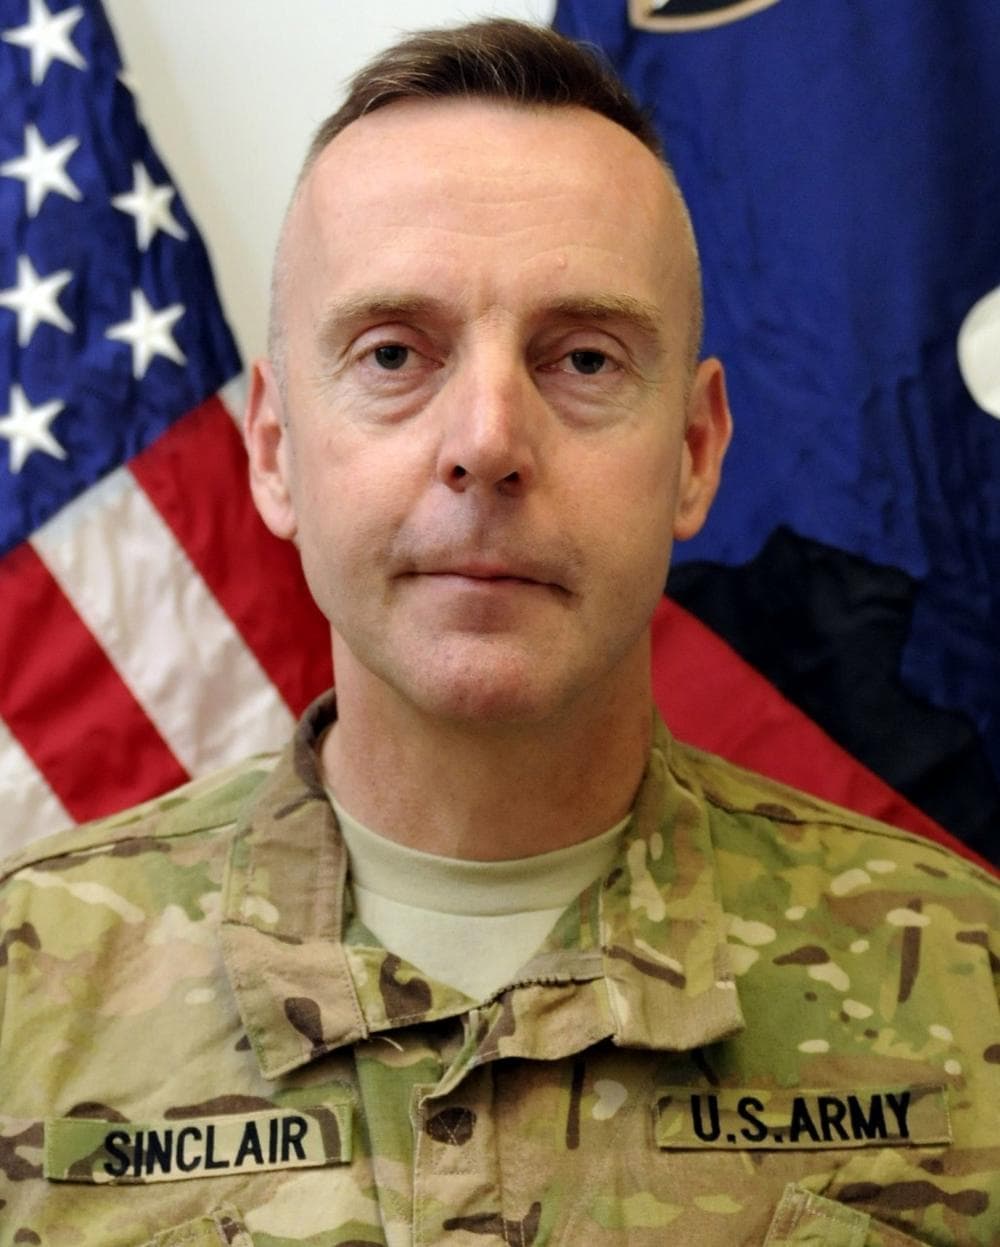 Brig. Gen. Jeffrey A. Sinclair. (U.S. Army)